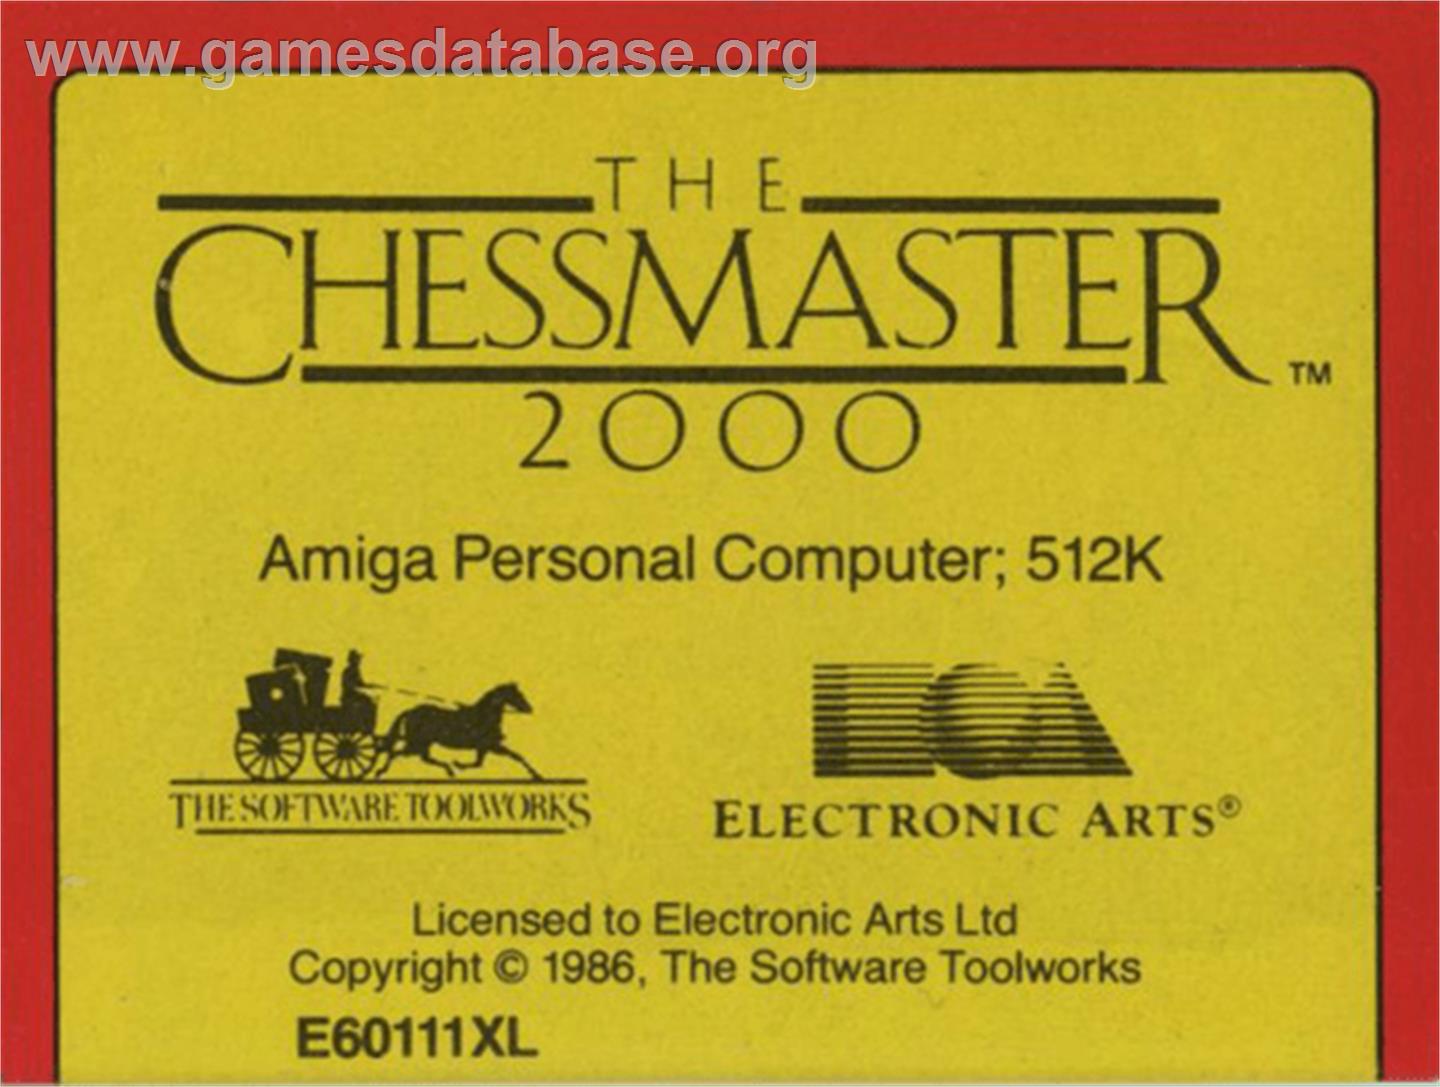 Chessmaster 2000 - Commodore Amiga - Artwork - Cartridge Top